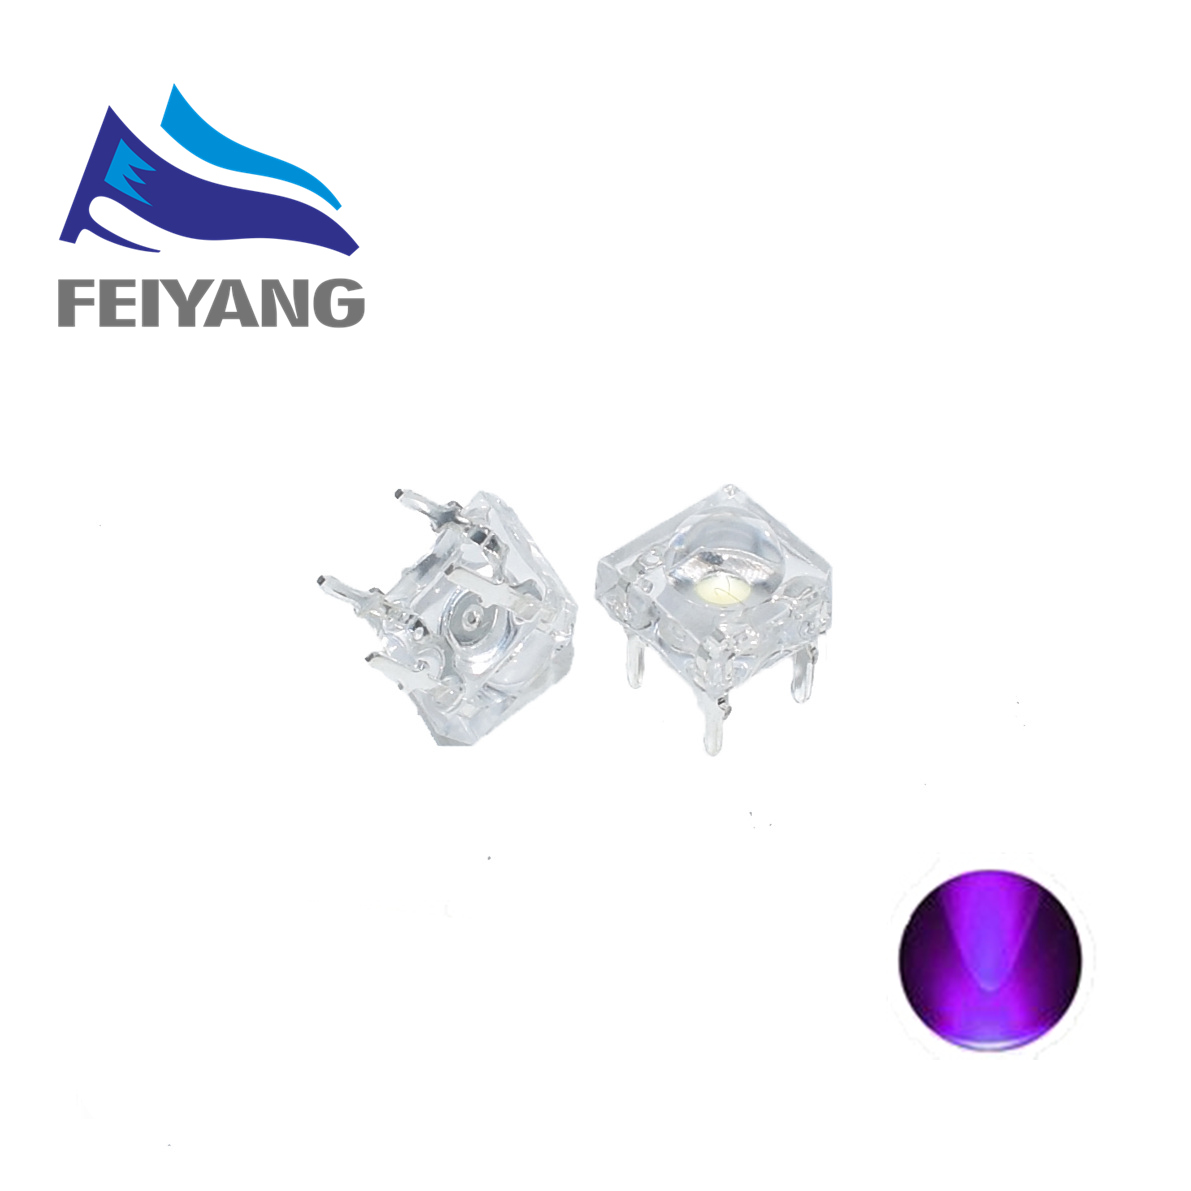 10PCS/100PCS/1000PCS F5 5MM UV/purple Piranha Super Flux Leds 4 pin Dome Wide Angle Super Bright Light Lamp For Car Light